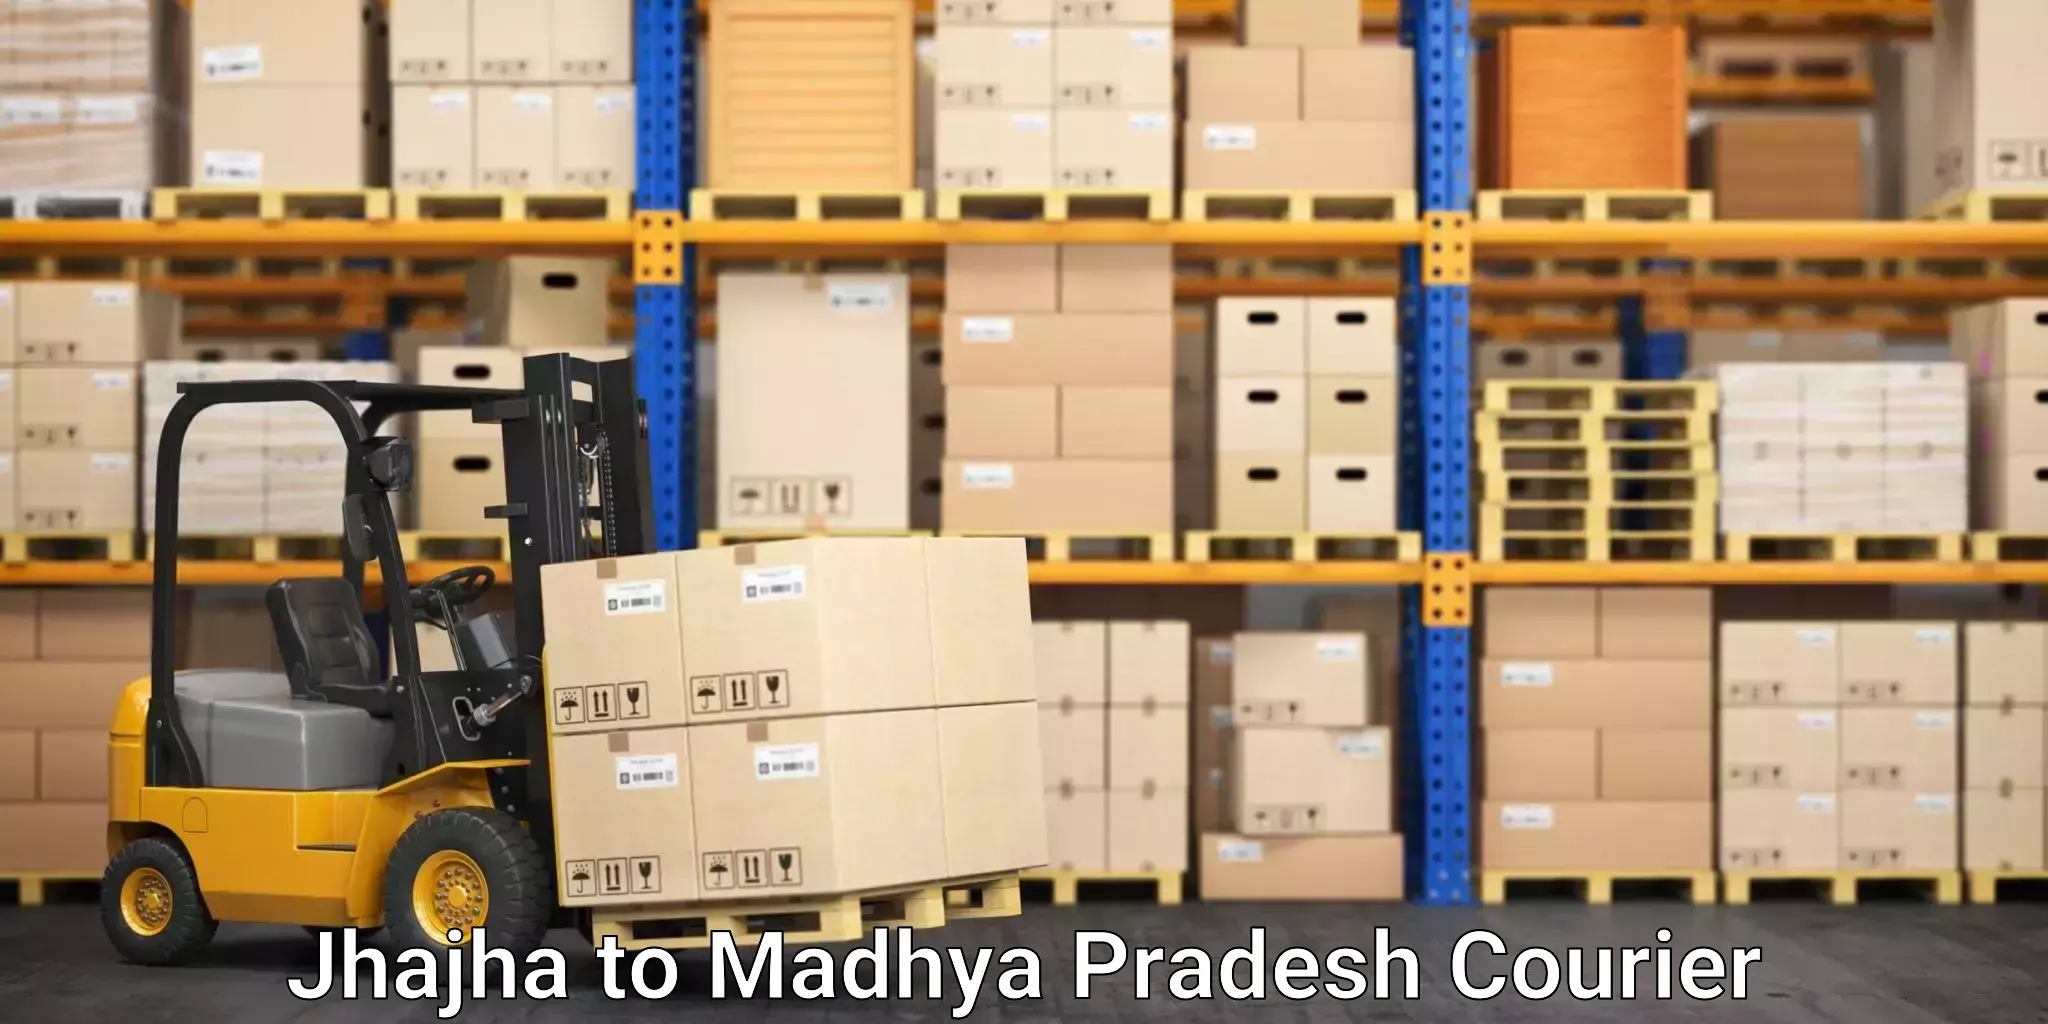 Furniture transport experts Jhajha to Madhya Pradesh